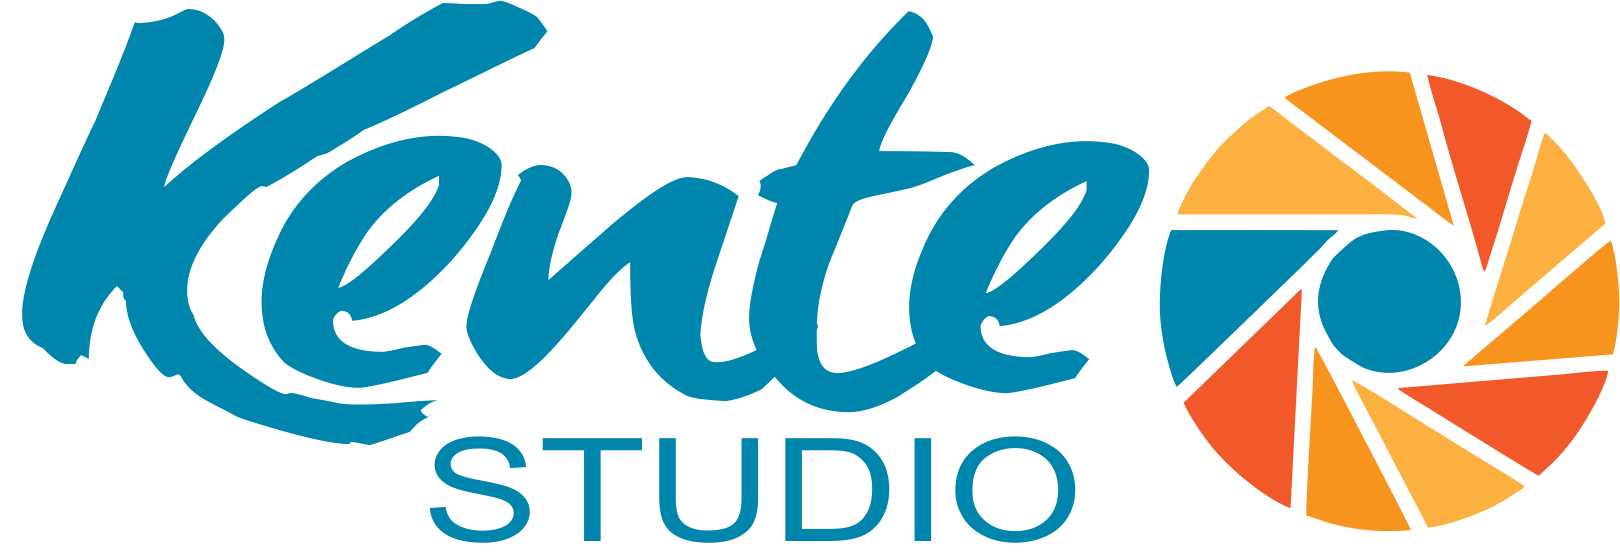 Kente Studio